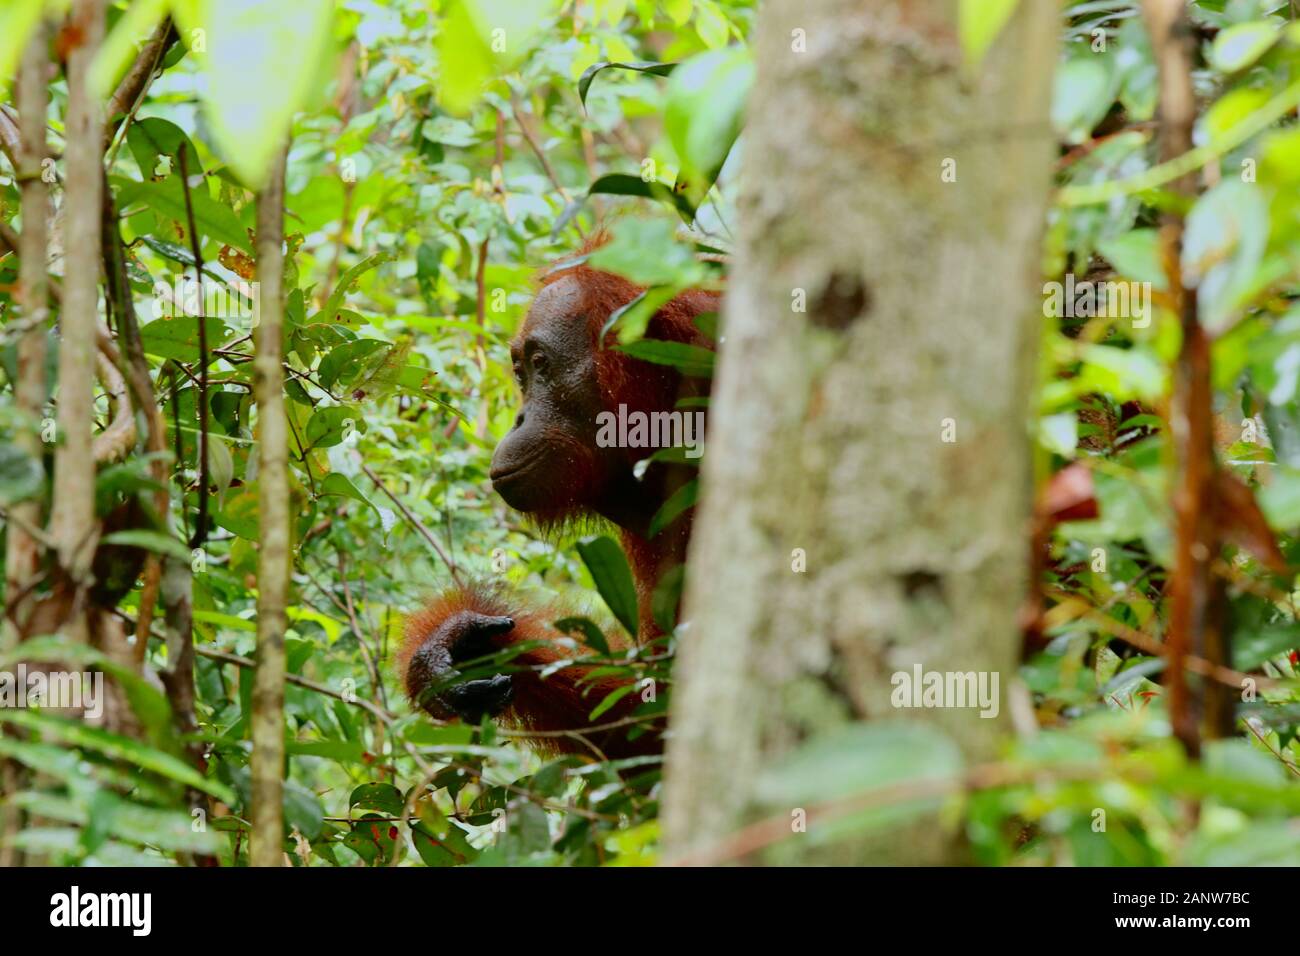 Ritratto di selvaggia degli Oranghi nella giungla di Bormeo Foto Stock